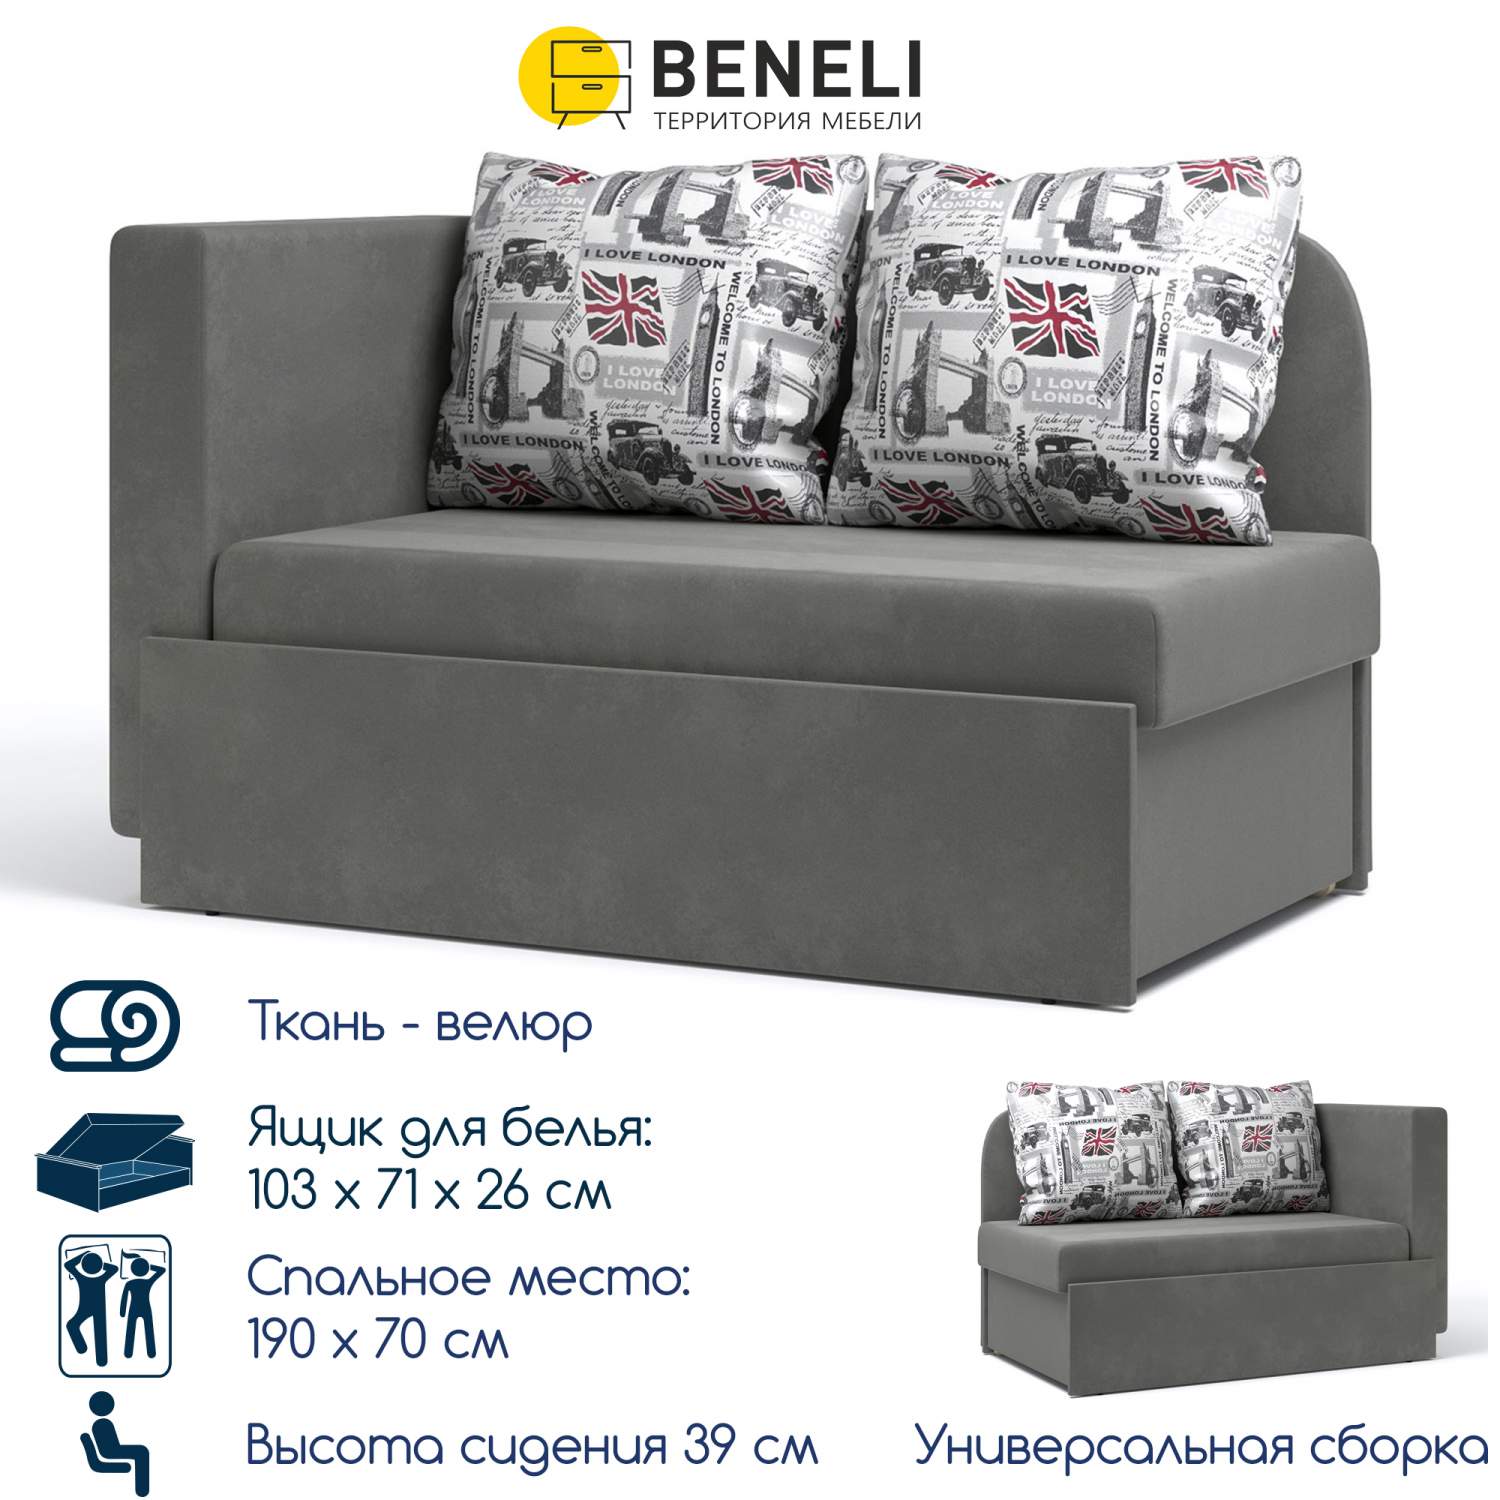 Детский прямой диван-кровать Beneli Кларис - купить в Москве, цены наМегамаркет